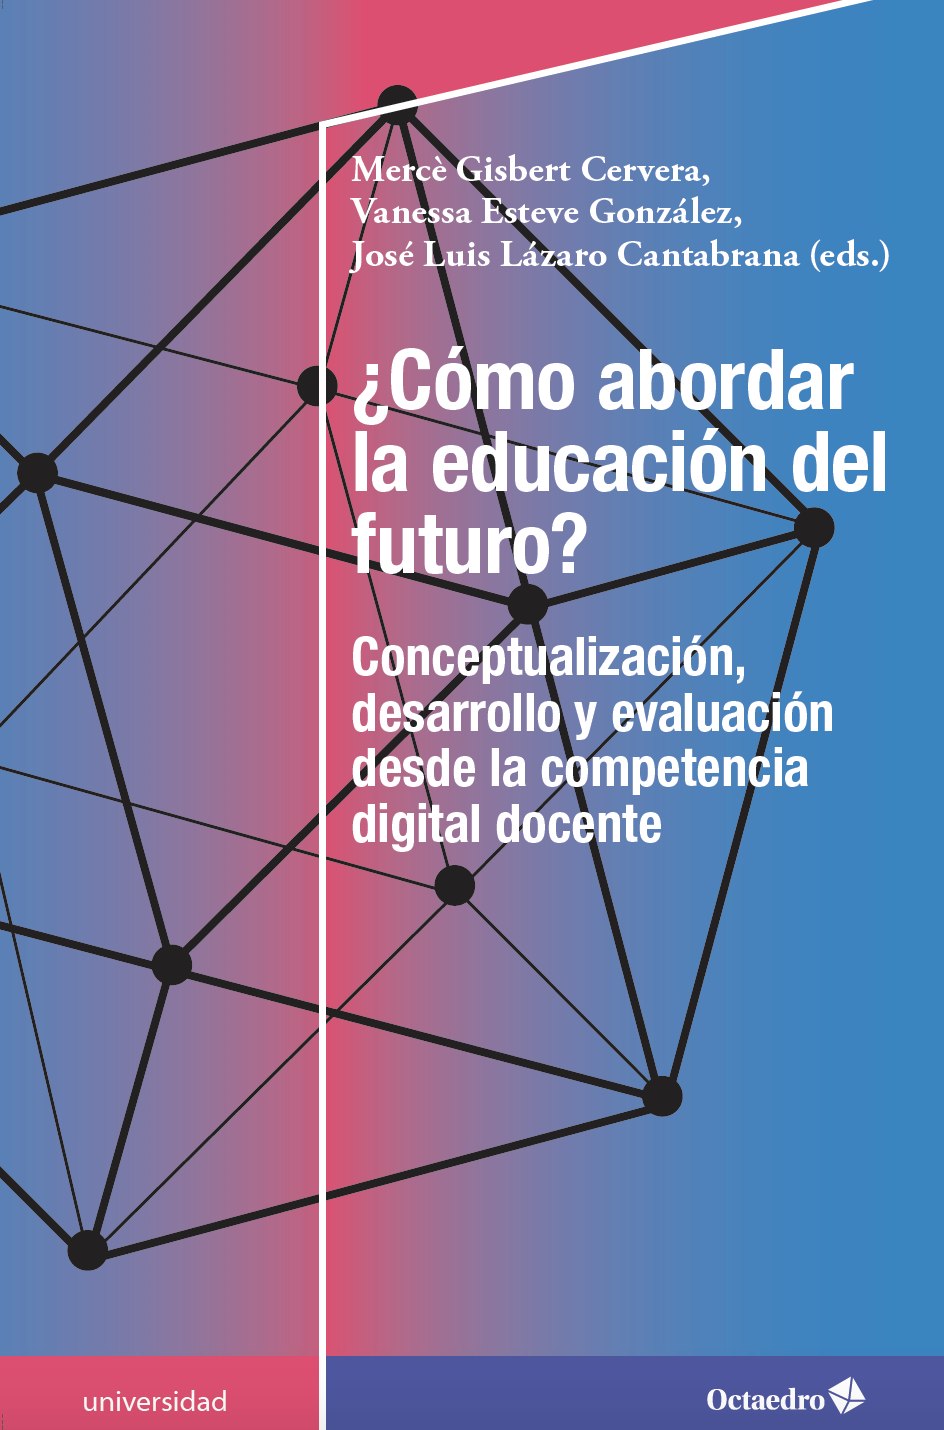 New publication - ¿Cómo abordar la educación del futuro?